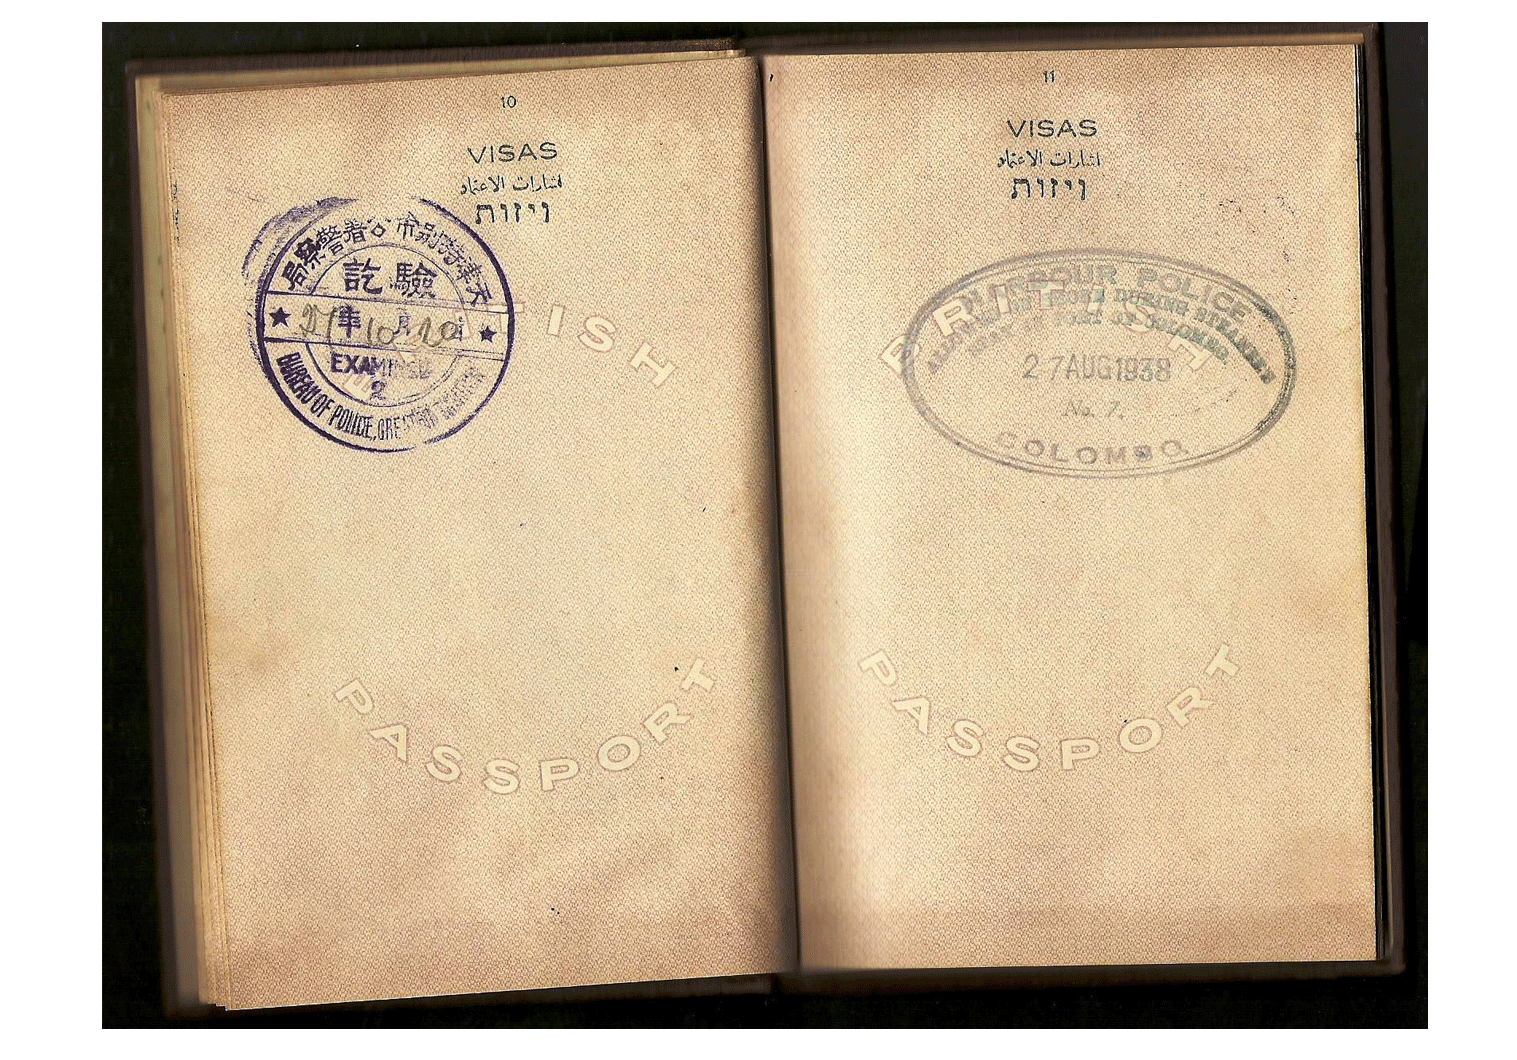 British Palestine passport for China